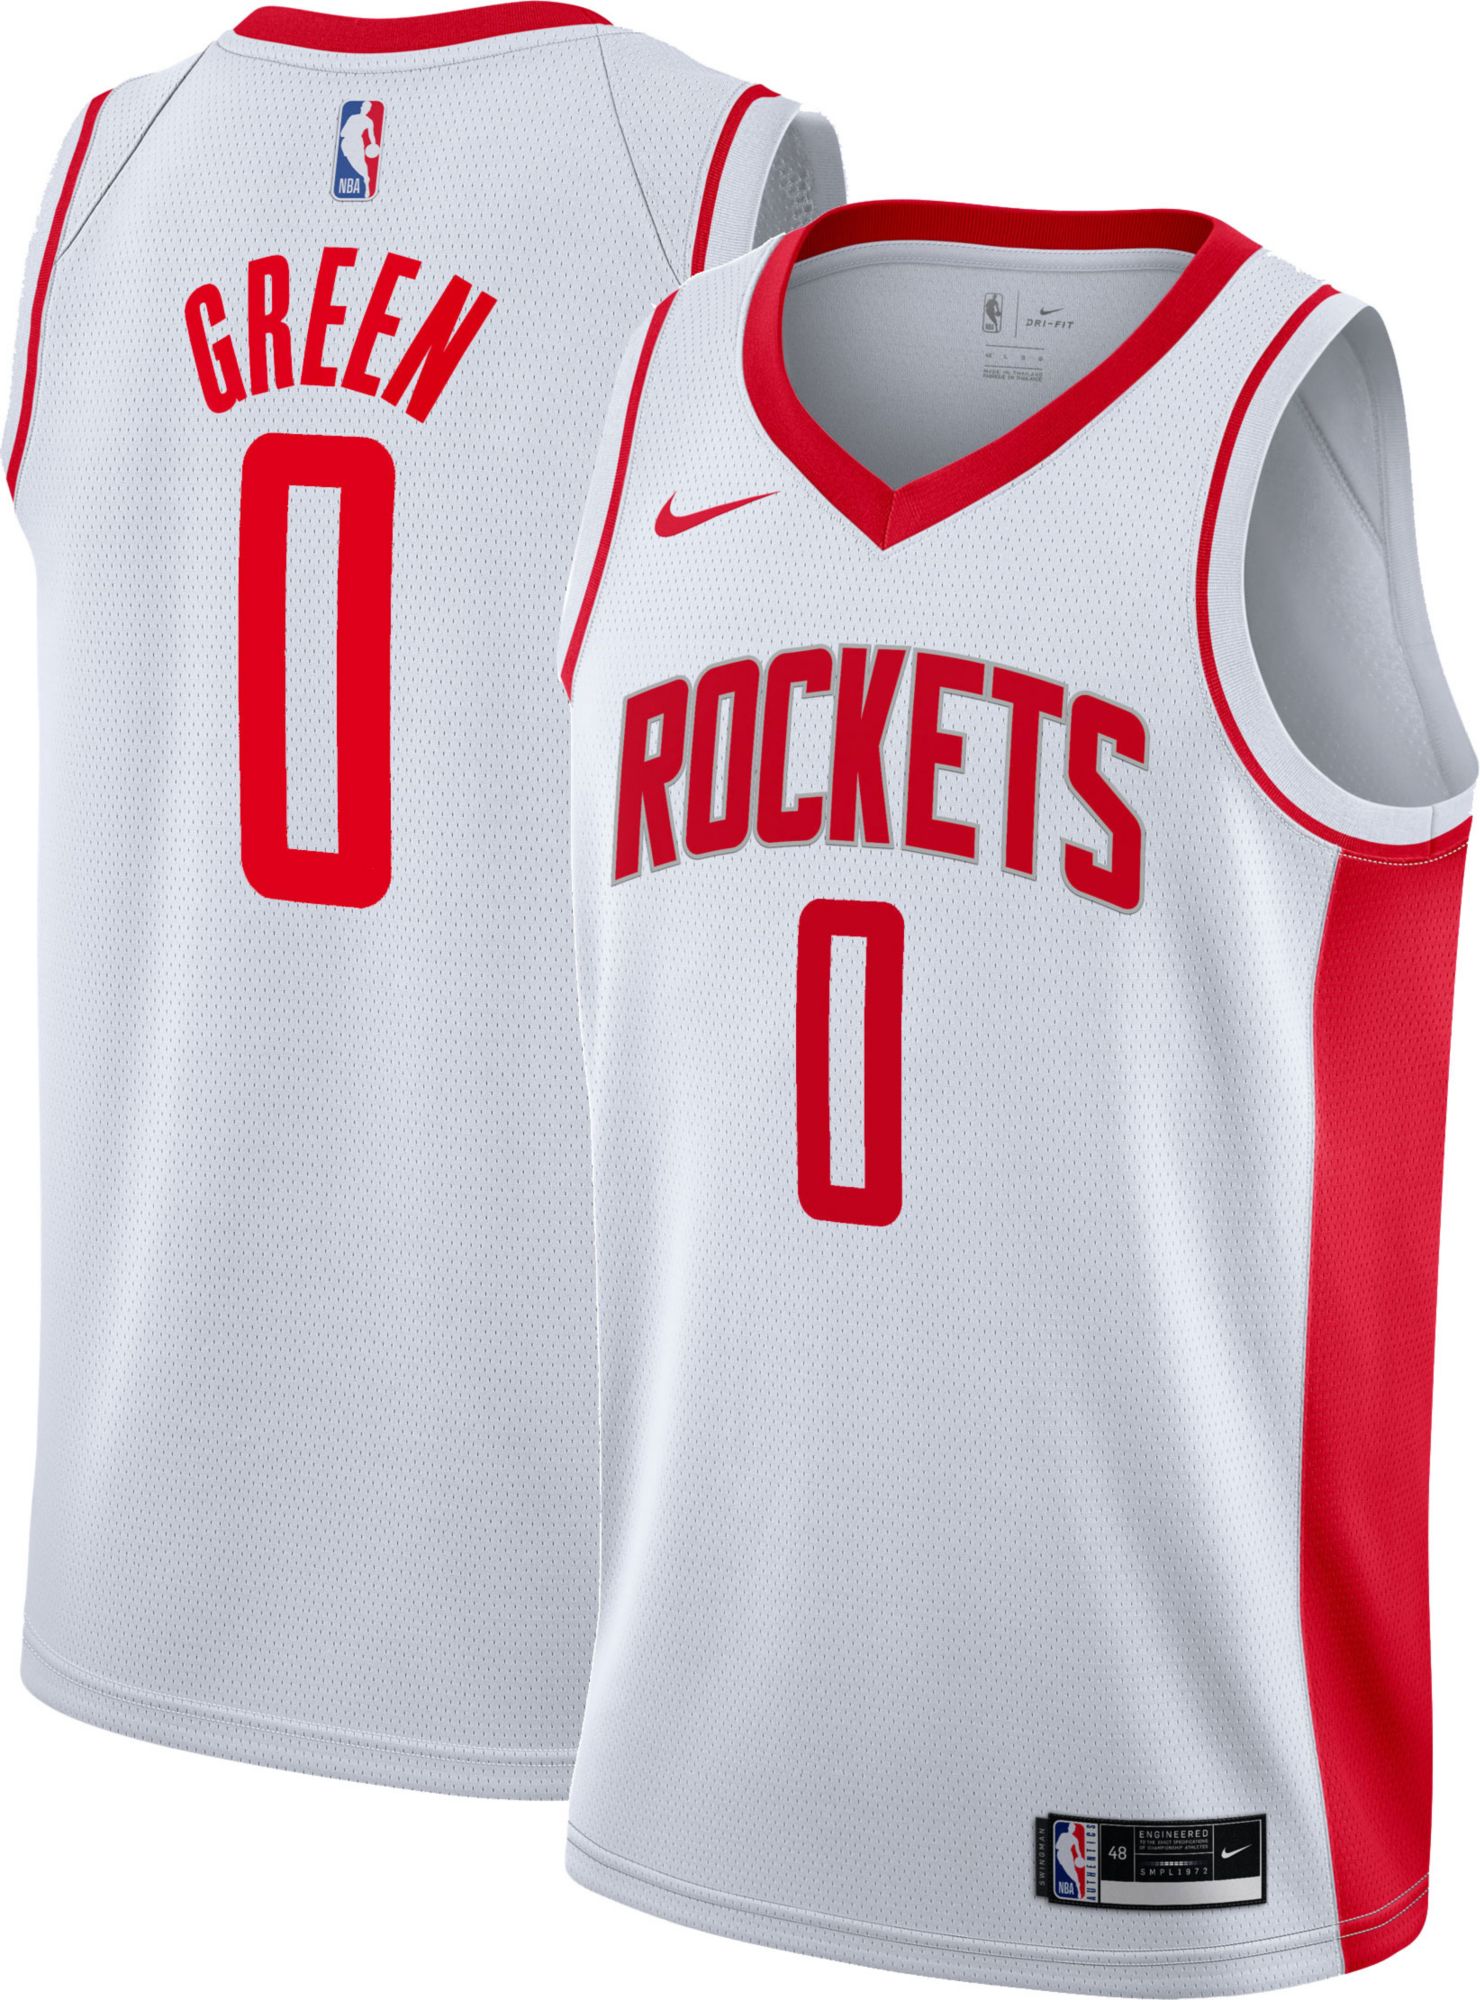 Jalen Green Houston Rockets #0 H-Town Jersey Nike Swingman Size